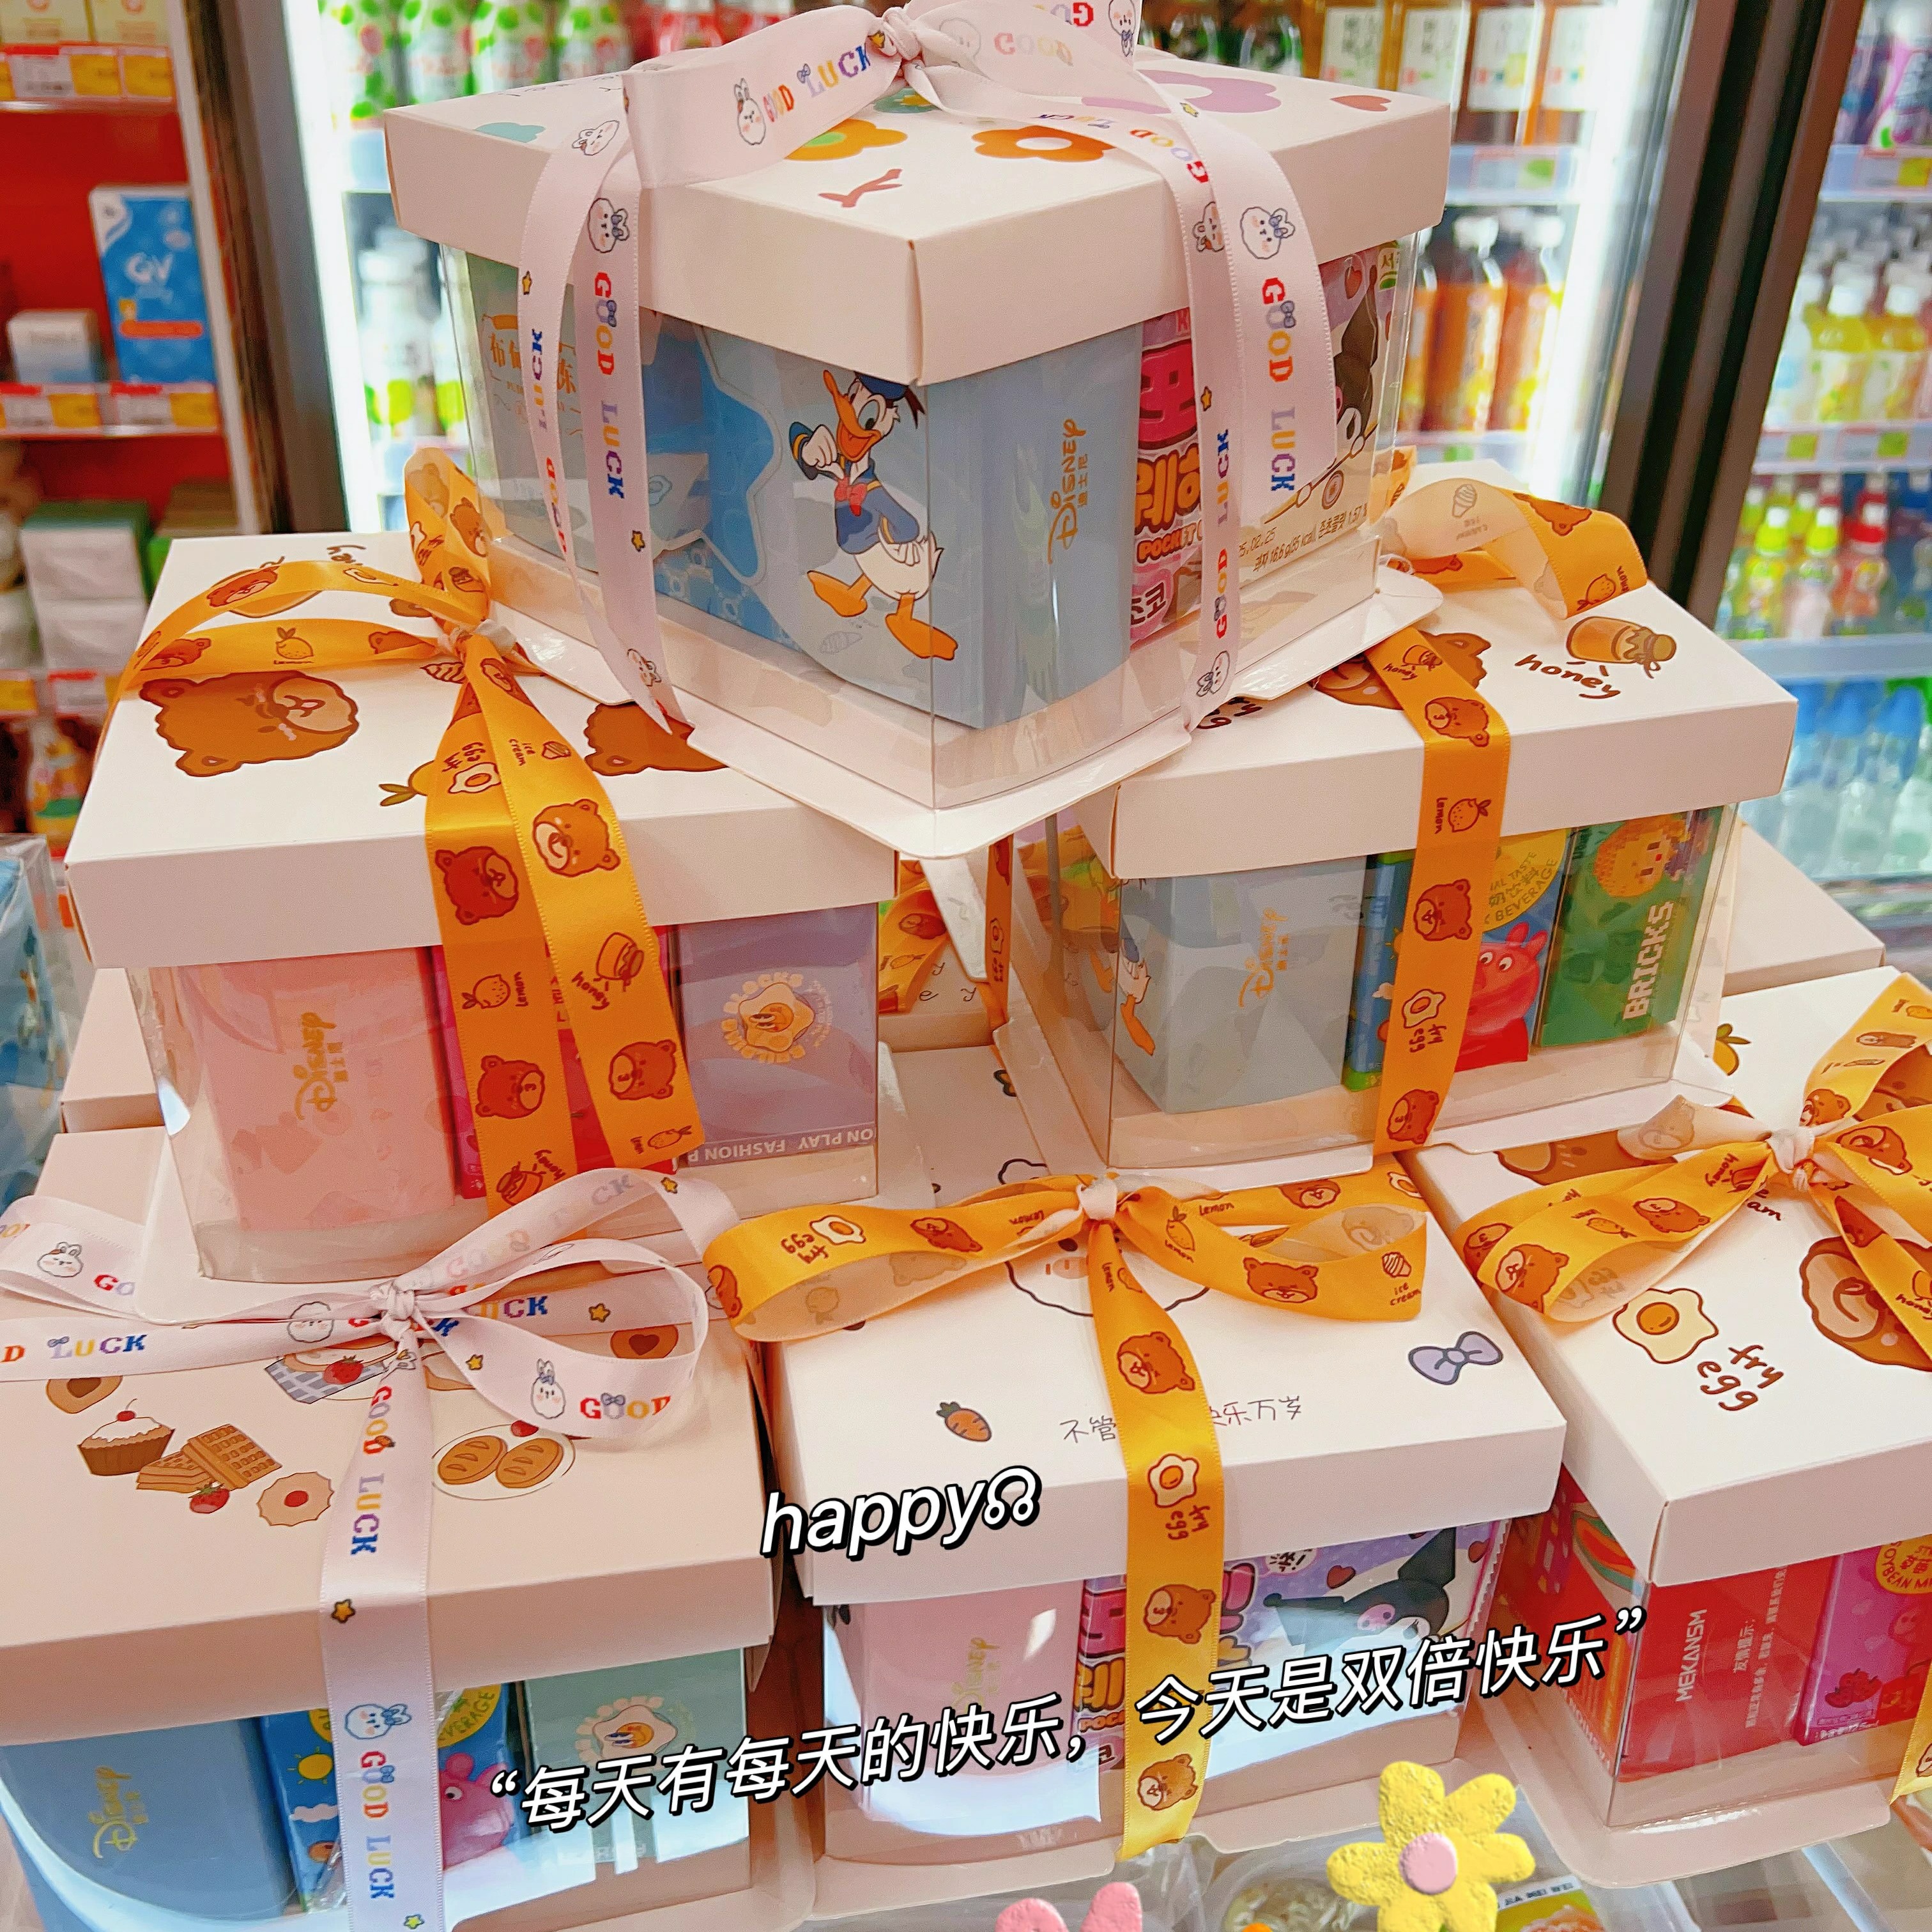 6.1儿童节 零食蛋糕礼盒 精美卡通造型玩具糖果饼干1*12盒/箱